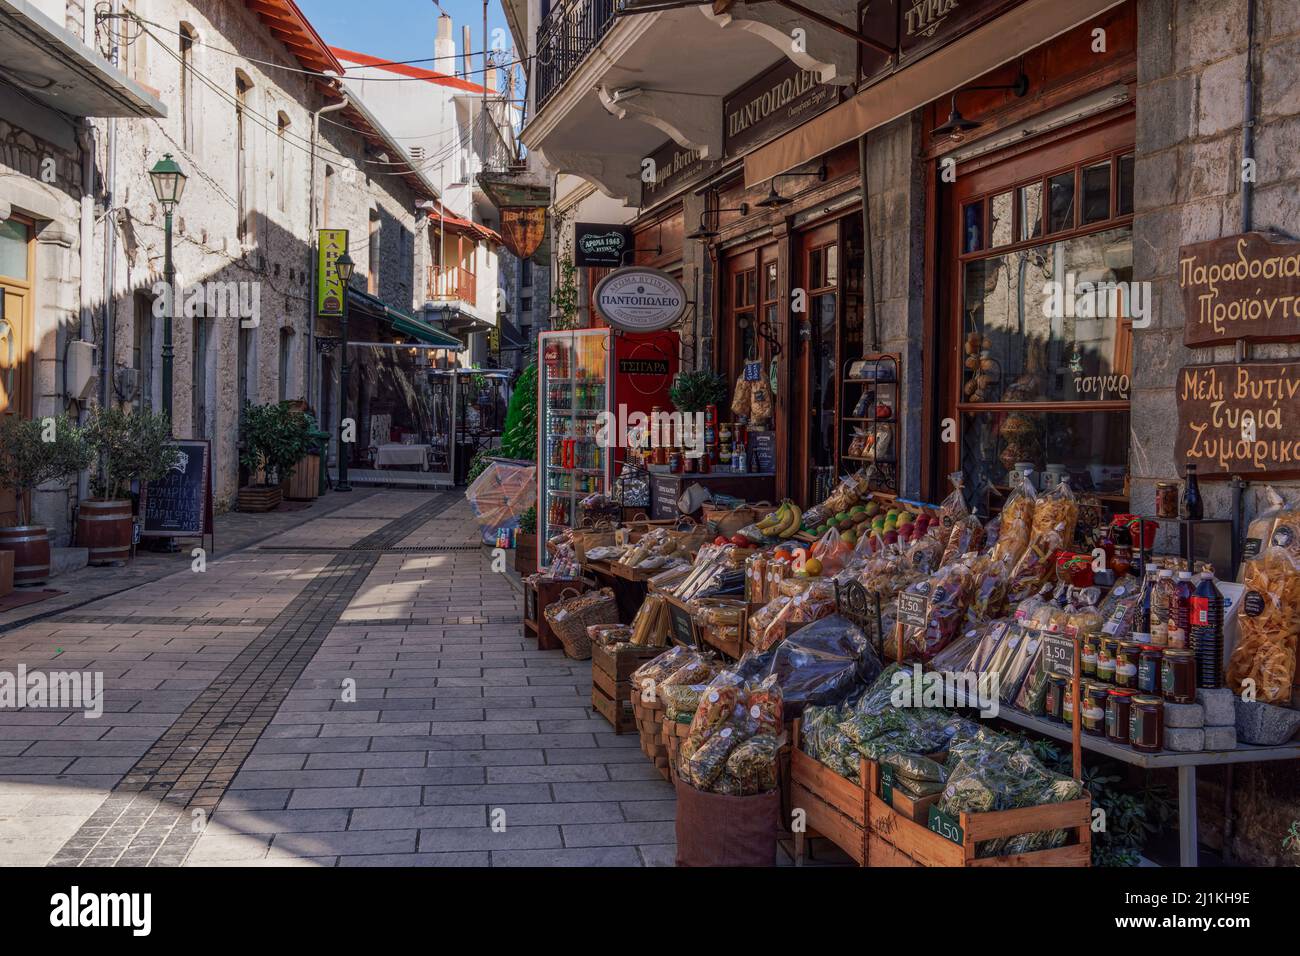 Vytina, Griechenland Tagesansicht des lokalen Lebensmittelgeschäft in einer Fußgängerzone in Arcadia Peloponnes. Stockfoto